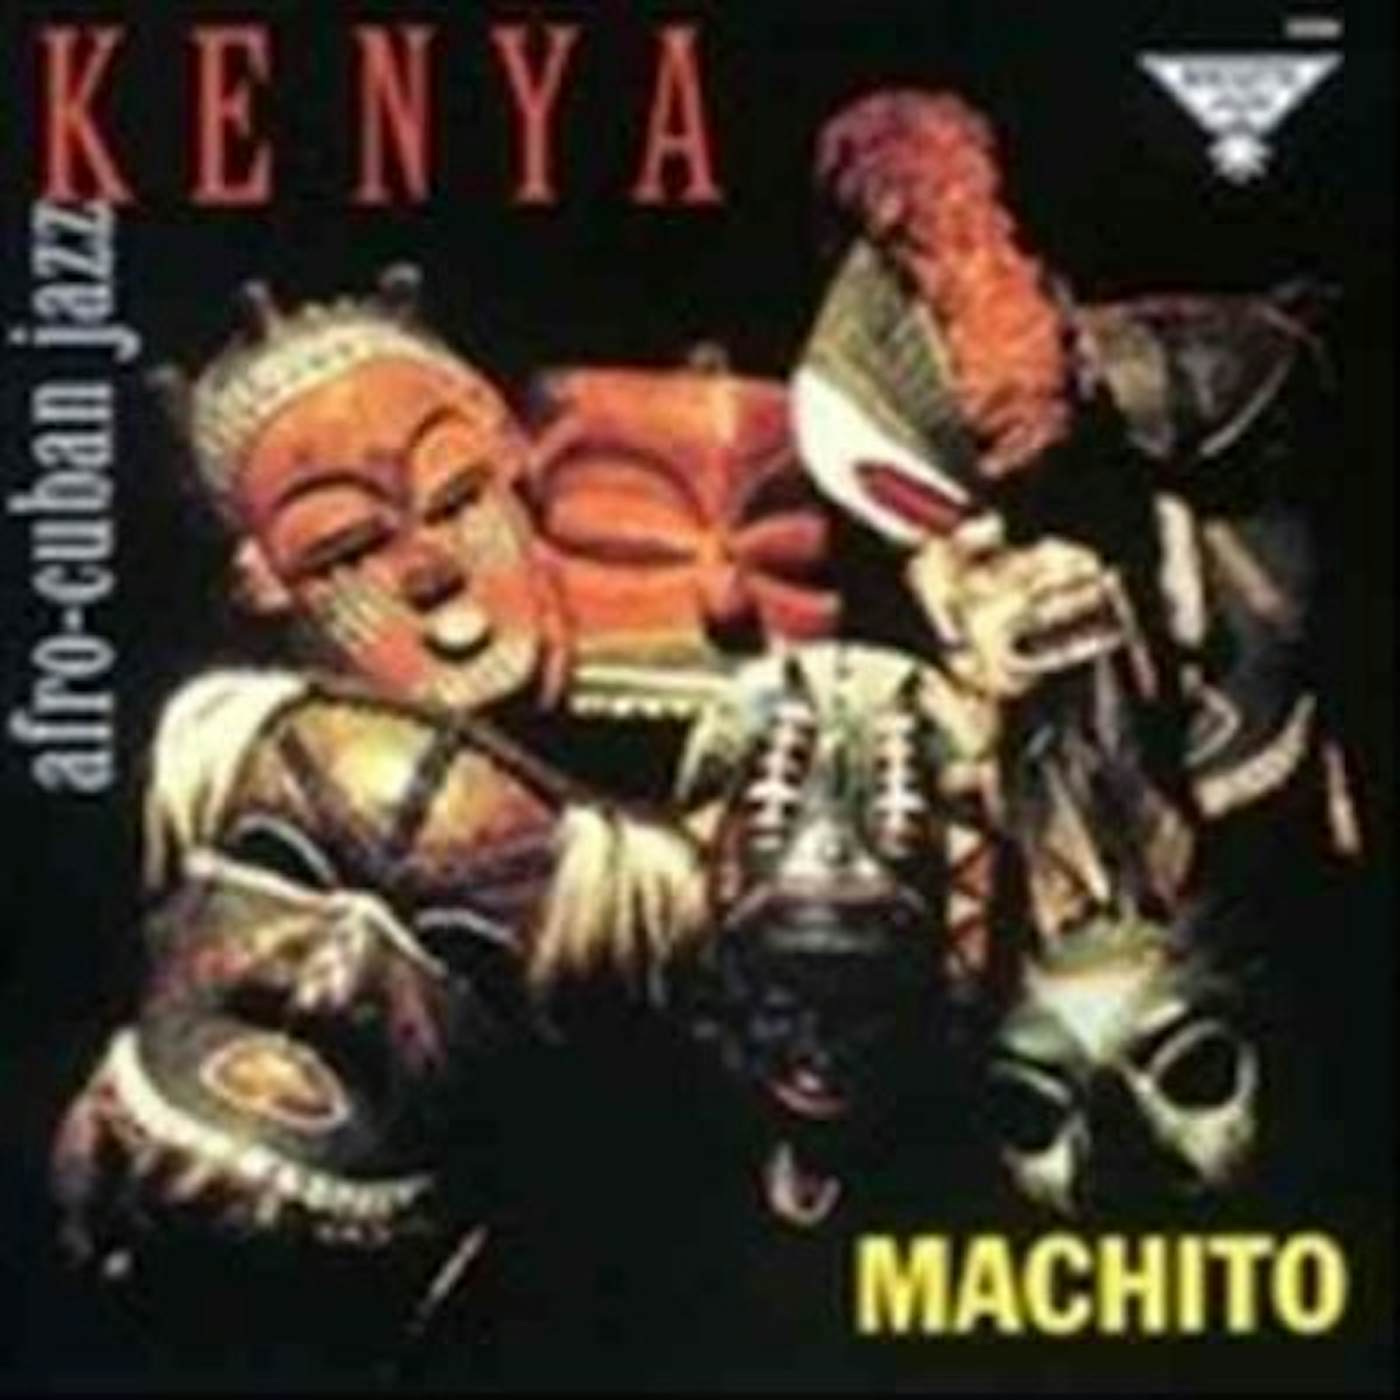 Machito Kenya Vinyl Record